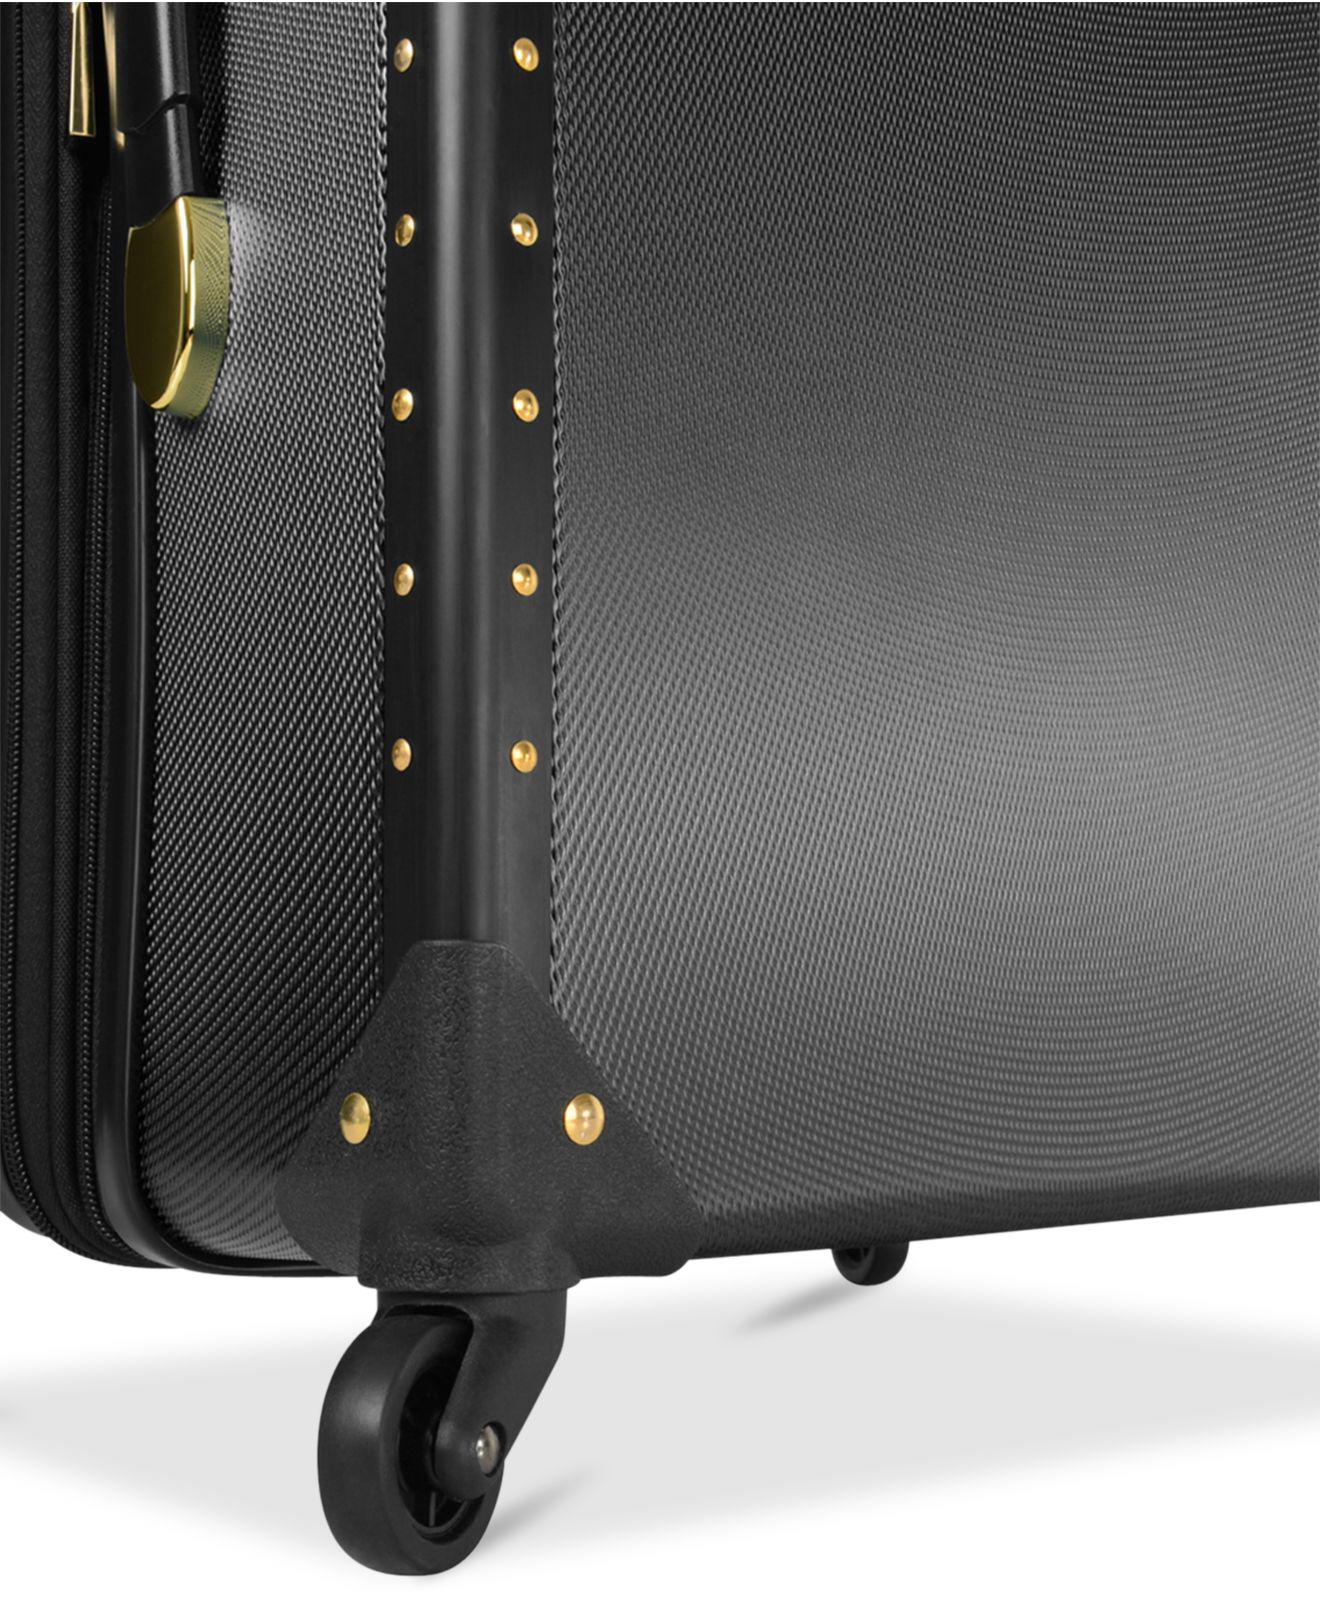 Vince Camuto Ivor Medium 24 Luggage, Black